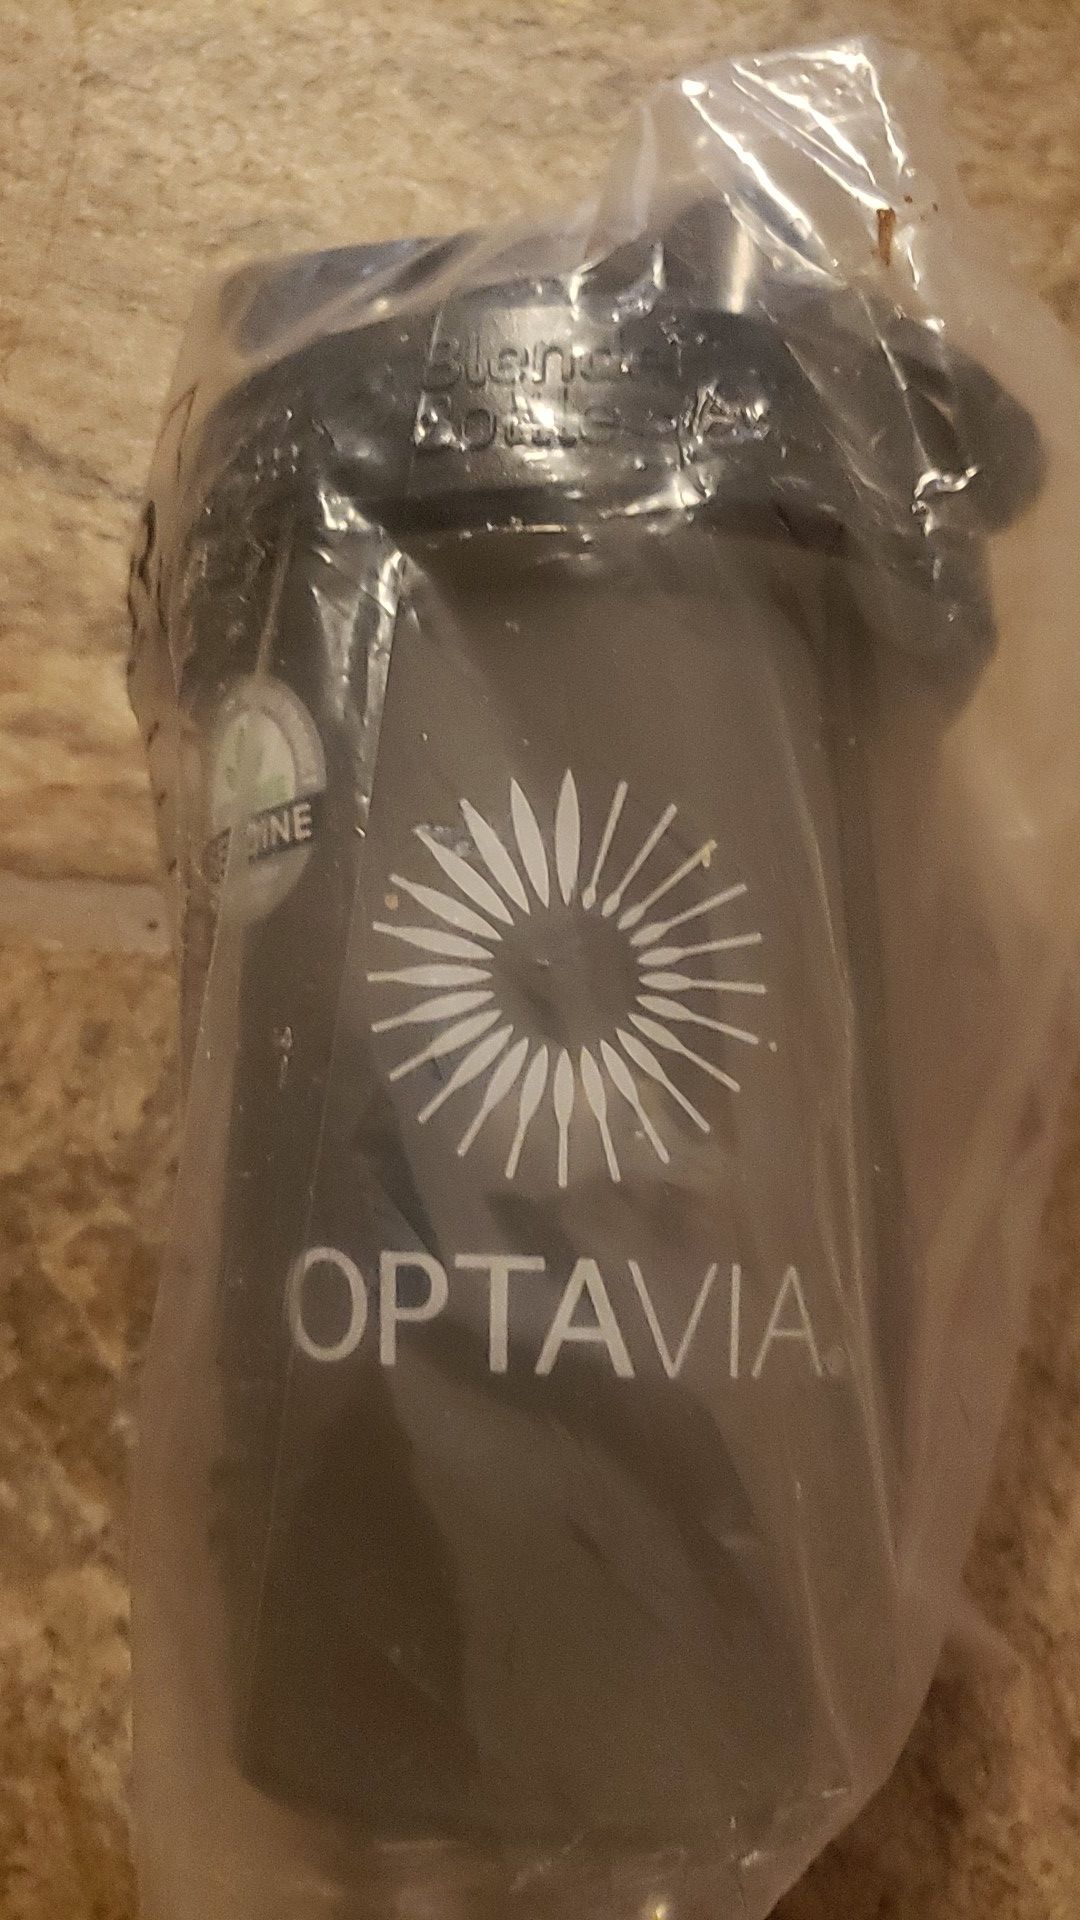 New optavia blender bottle 16 ounce shaker cup